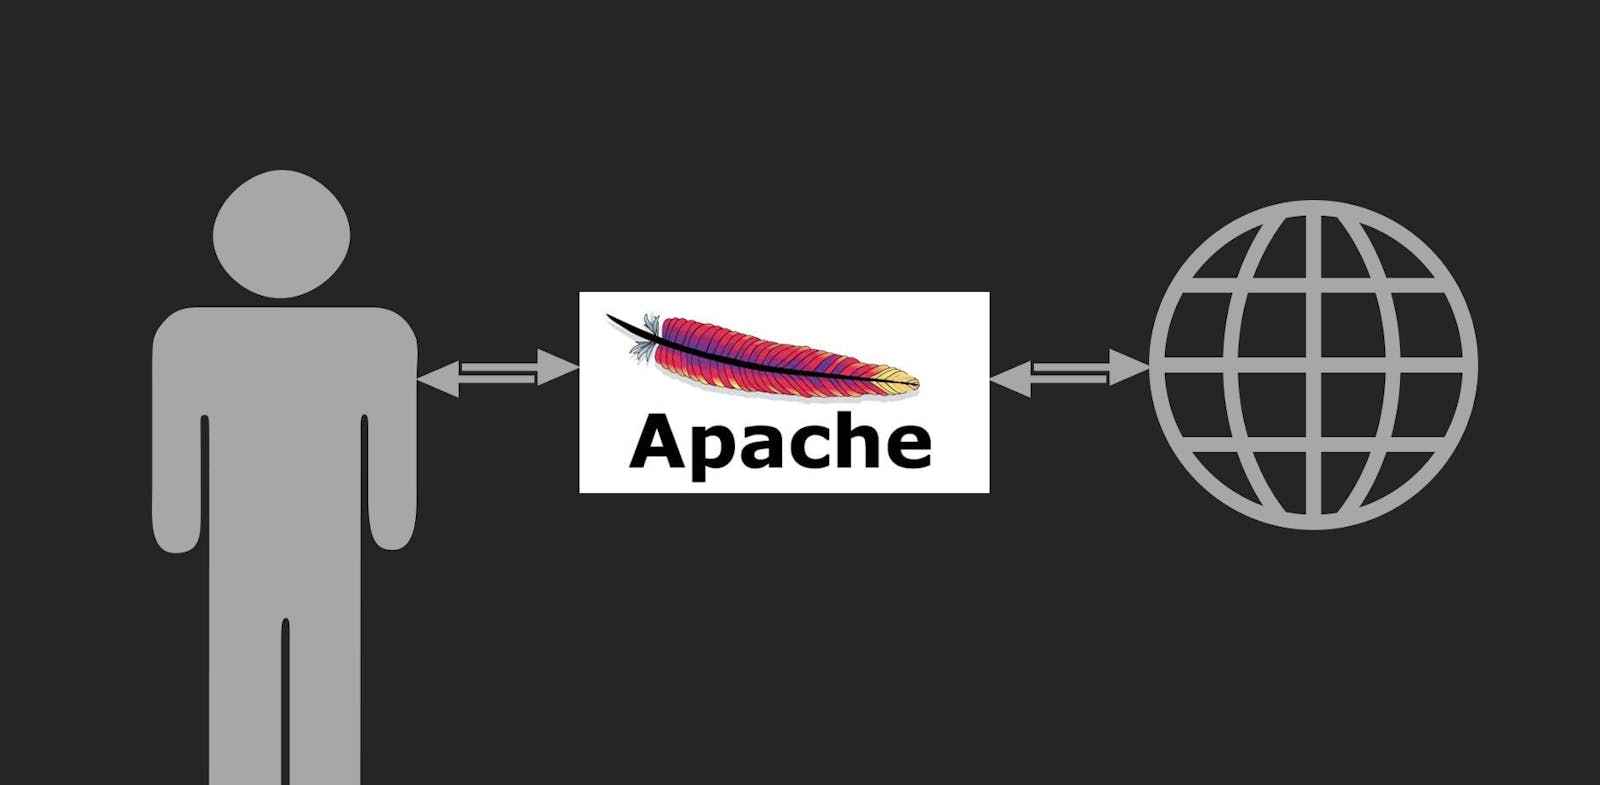 Apache forward proxy